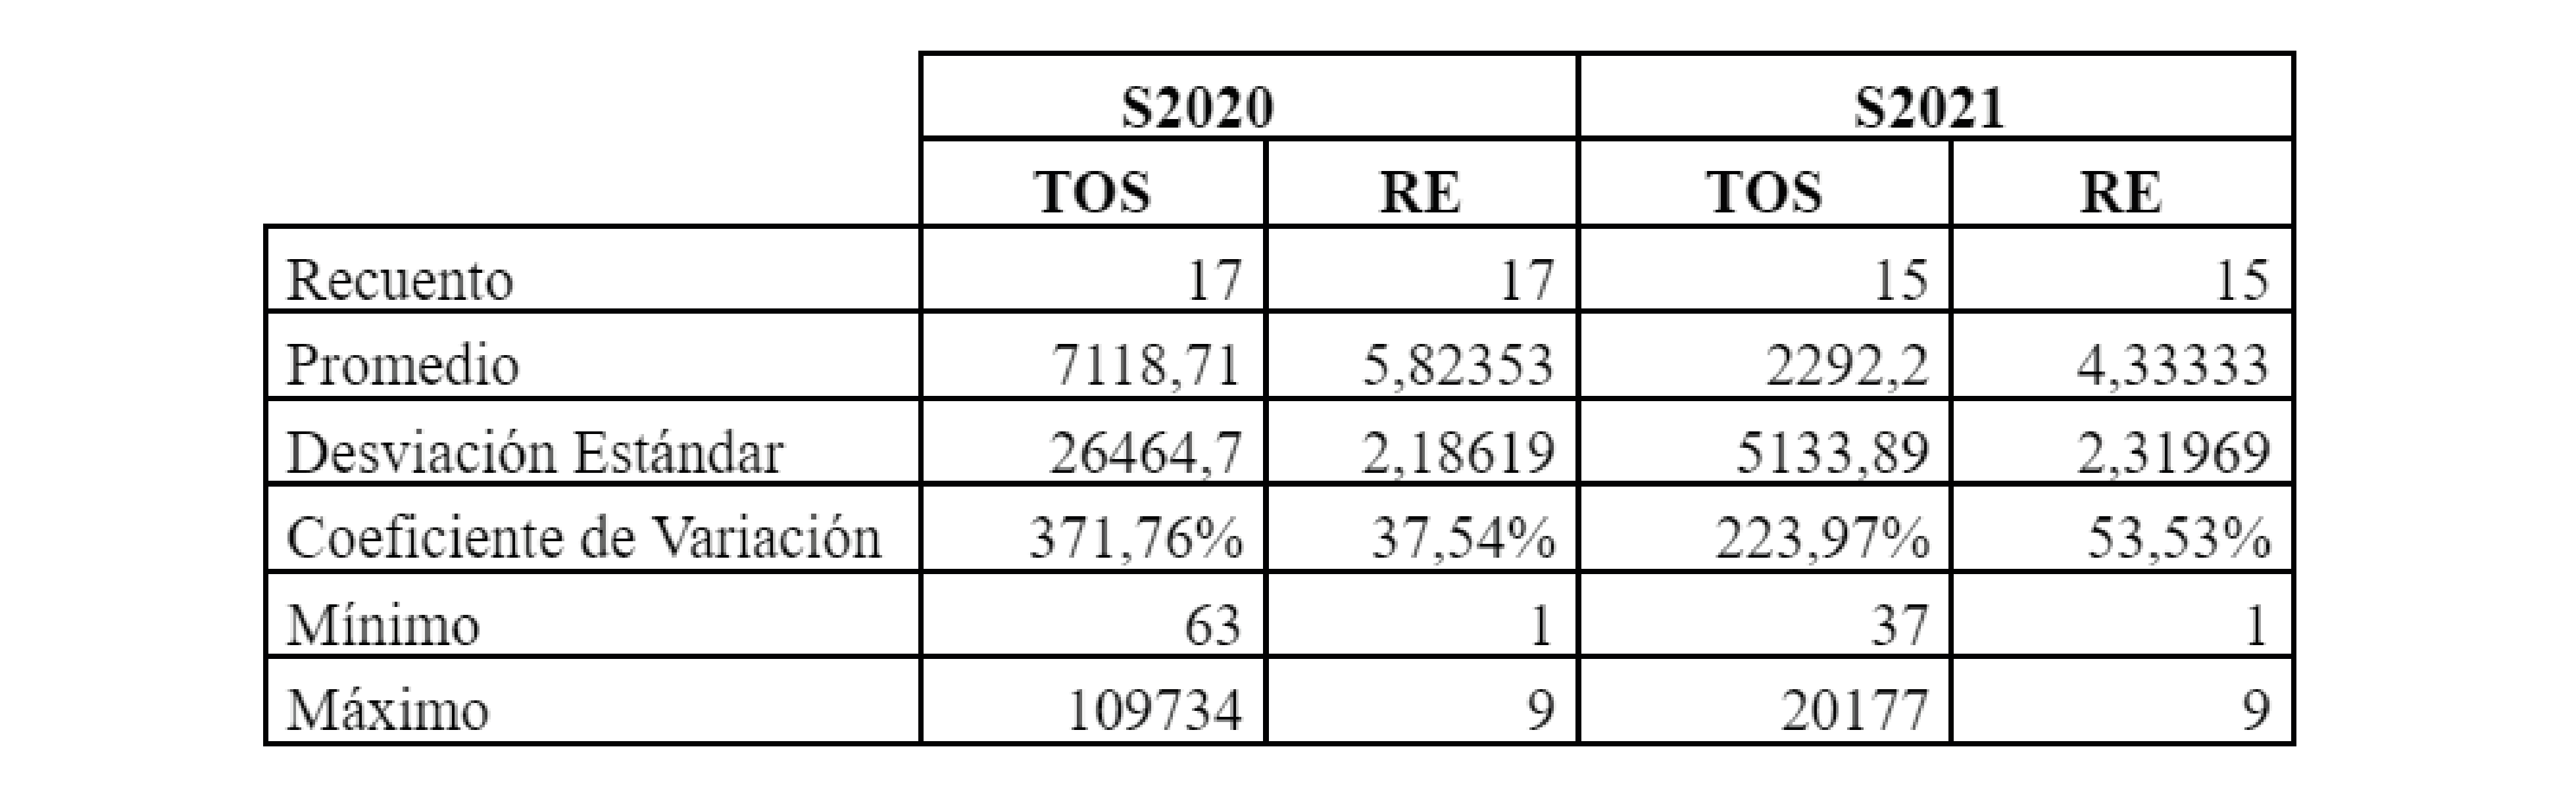 Resumen estadístico de Tamaño de la
Fracción de Otras Sociales (TOS) Riqueza Estadística por muestra (RE) para
cosecha de soja de las campañas 2019-2020 (S2020) y 2020-2021 (S2021) en cuatro
Departamentos de Entre Ríos (Argentina). / Statistical summary of Size of the
Other Social Fraction (TOS and Specific Richness per sample (RE) in soybean
harvest of the 2019-2020 (S2020) and 2020-2021 (S2021) cycles in four
Departments of Entre Ríos (Argentina).